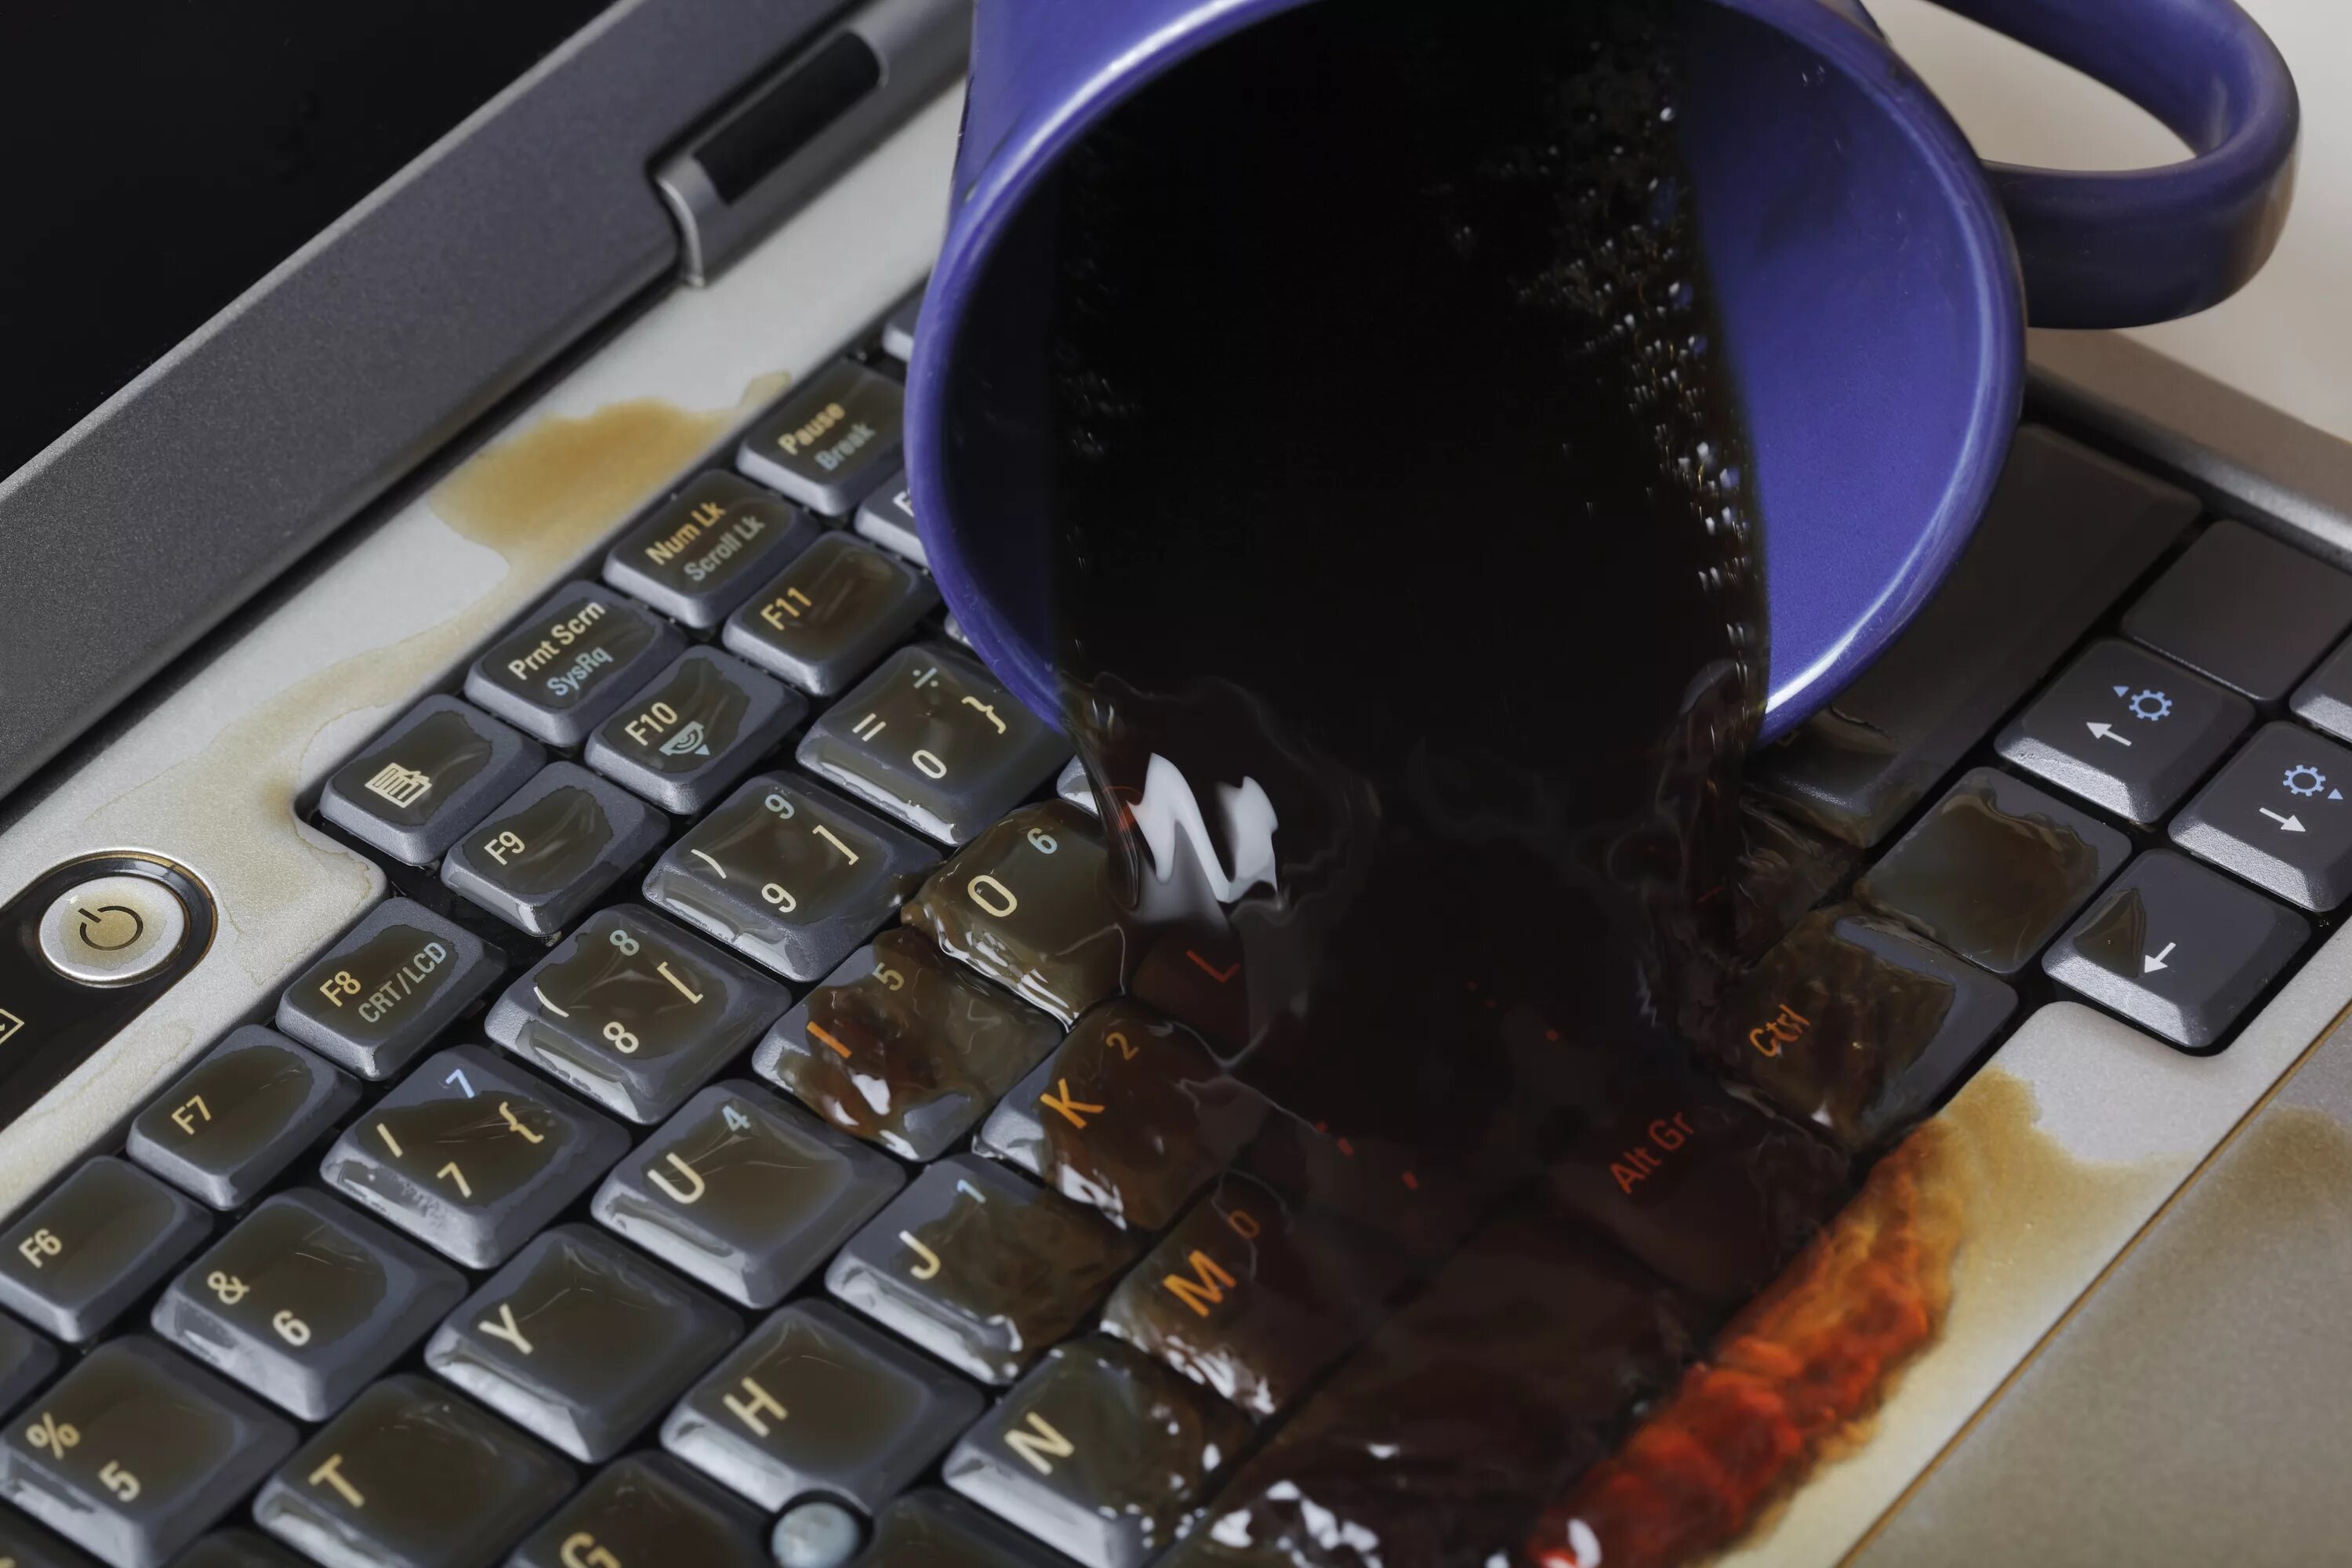 Пролитый кофе на клавиатуру. Пролили воду на клавиатуру ноутбука. Пролил чай на клавиатуру. Кофе на клавиатуру ноутбука. На клавиатуру попала вода что делать